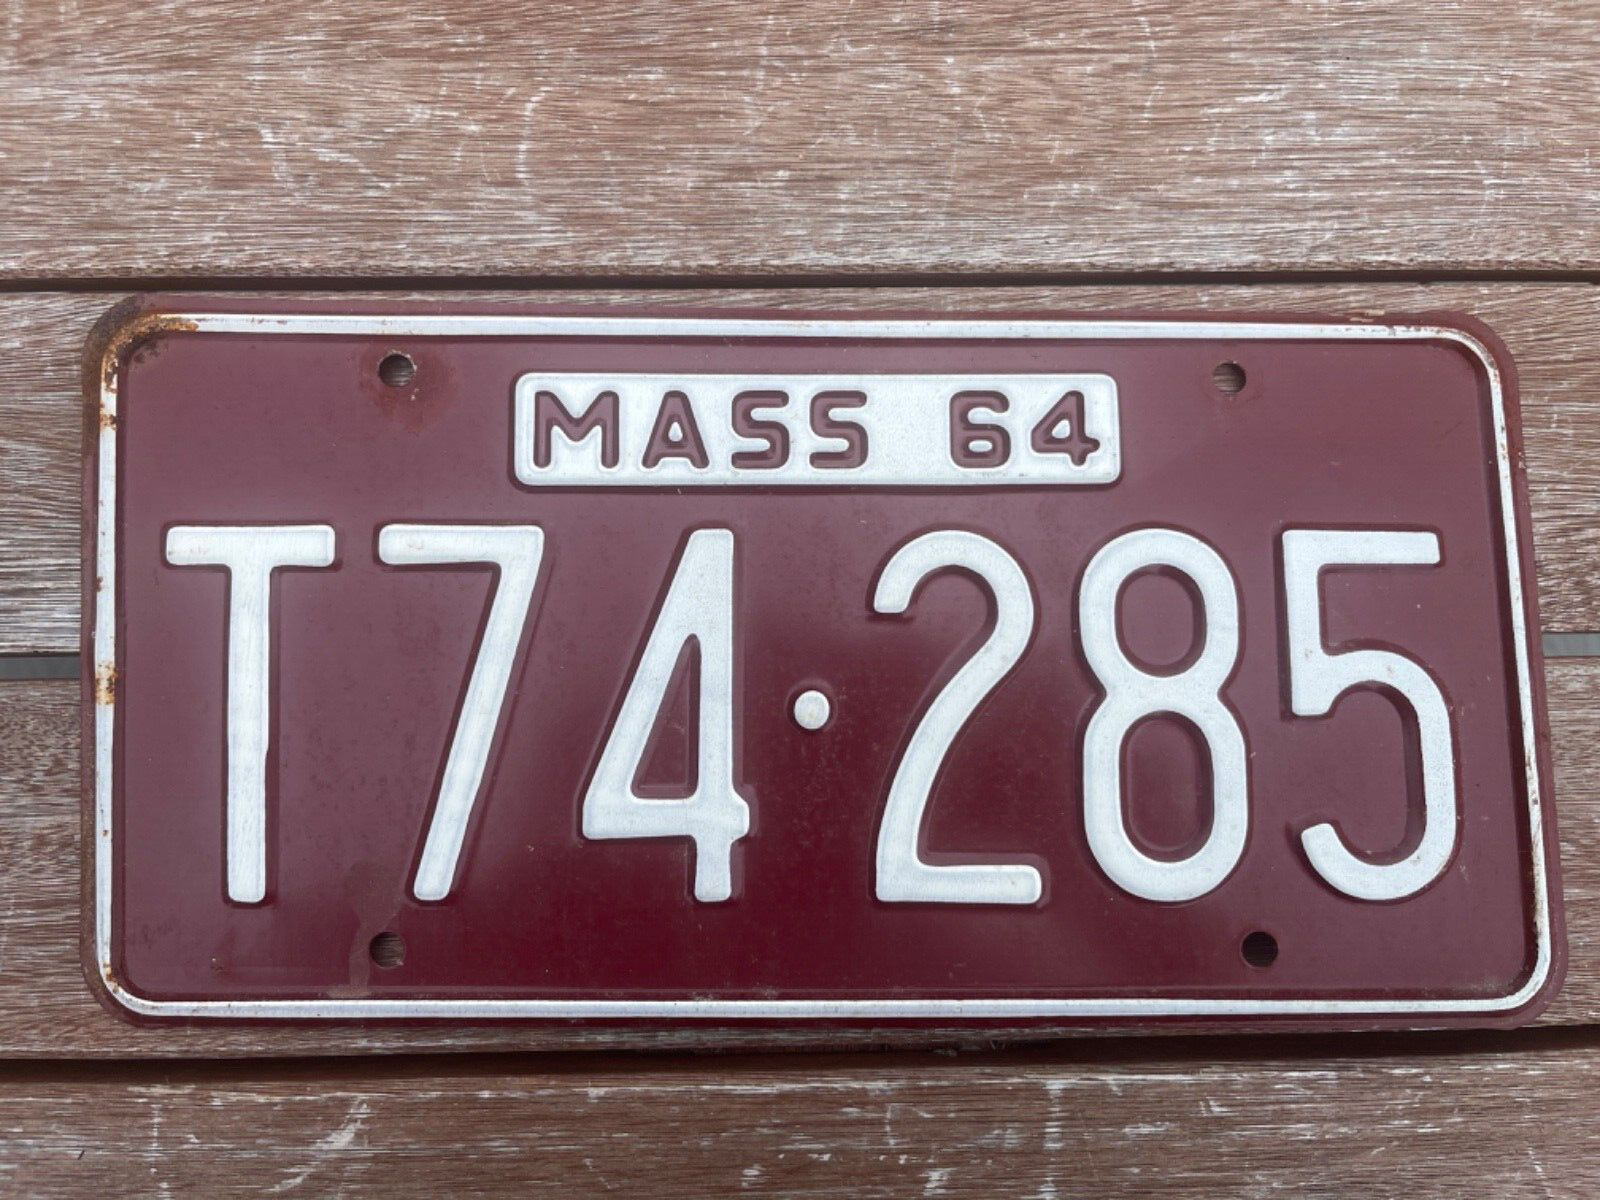 1964 Massachusetts License Plate T74 285